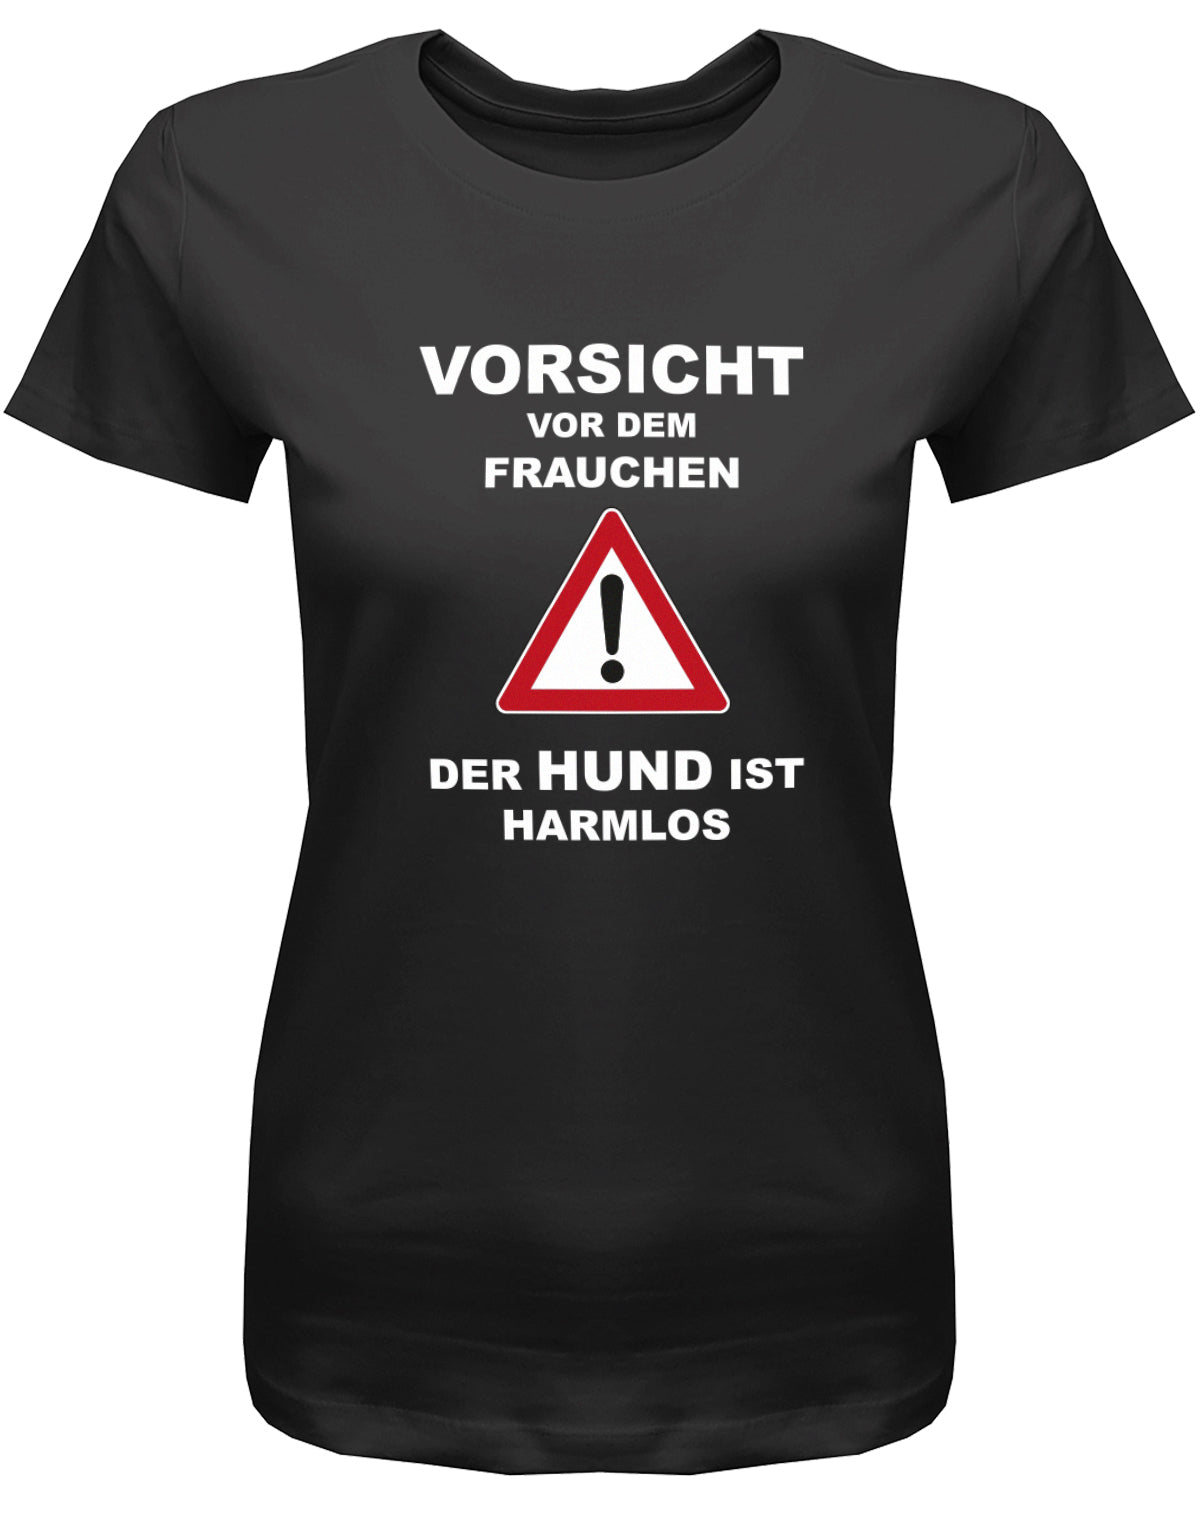 damen-shirt-schwarzqnsvwpFDRuJpC